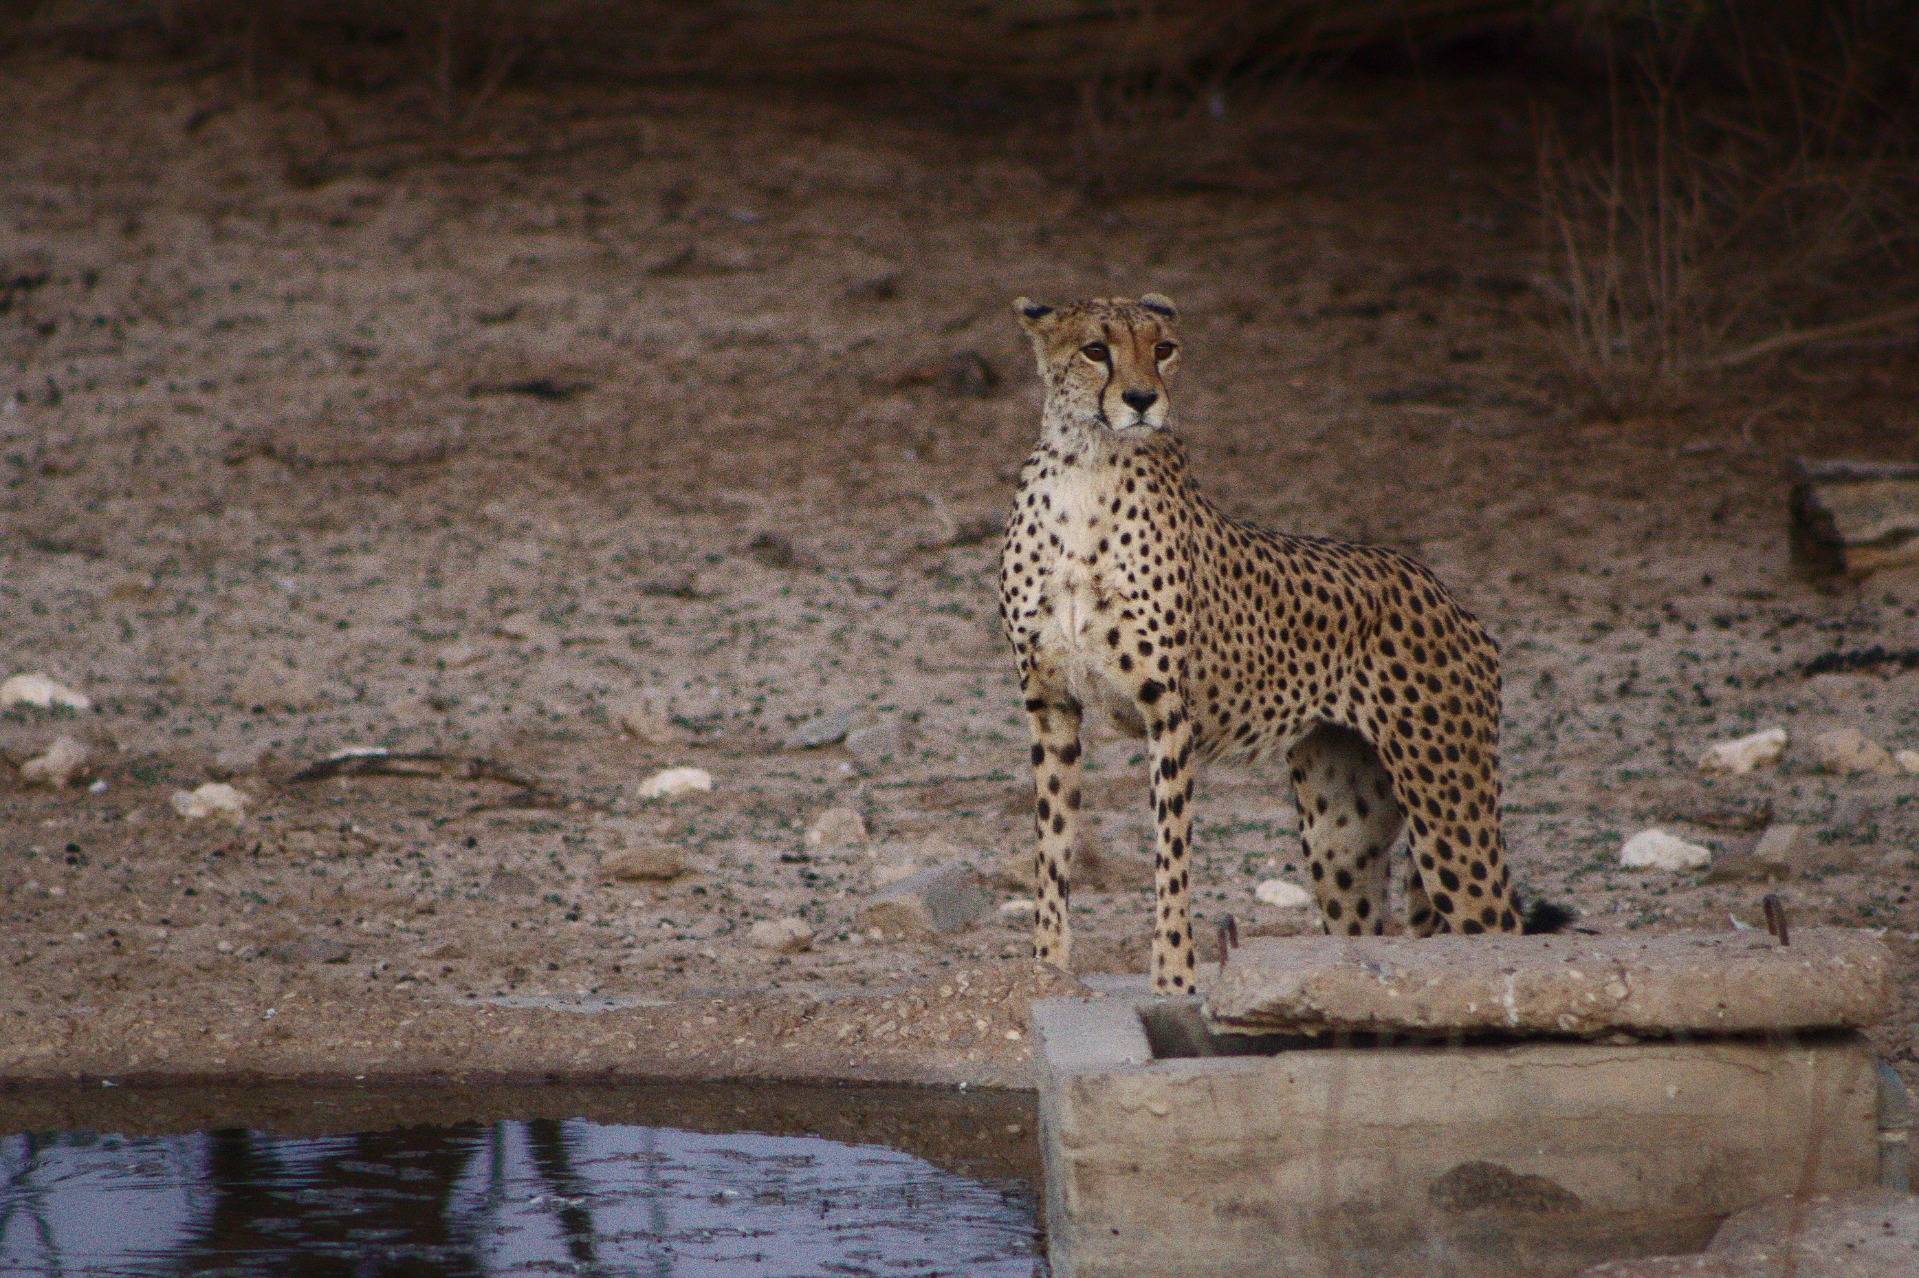 Cheetah at the camps' waterhole.